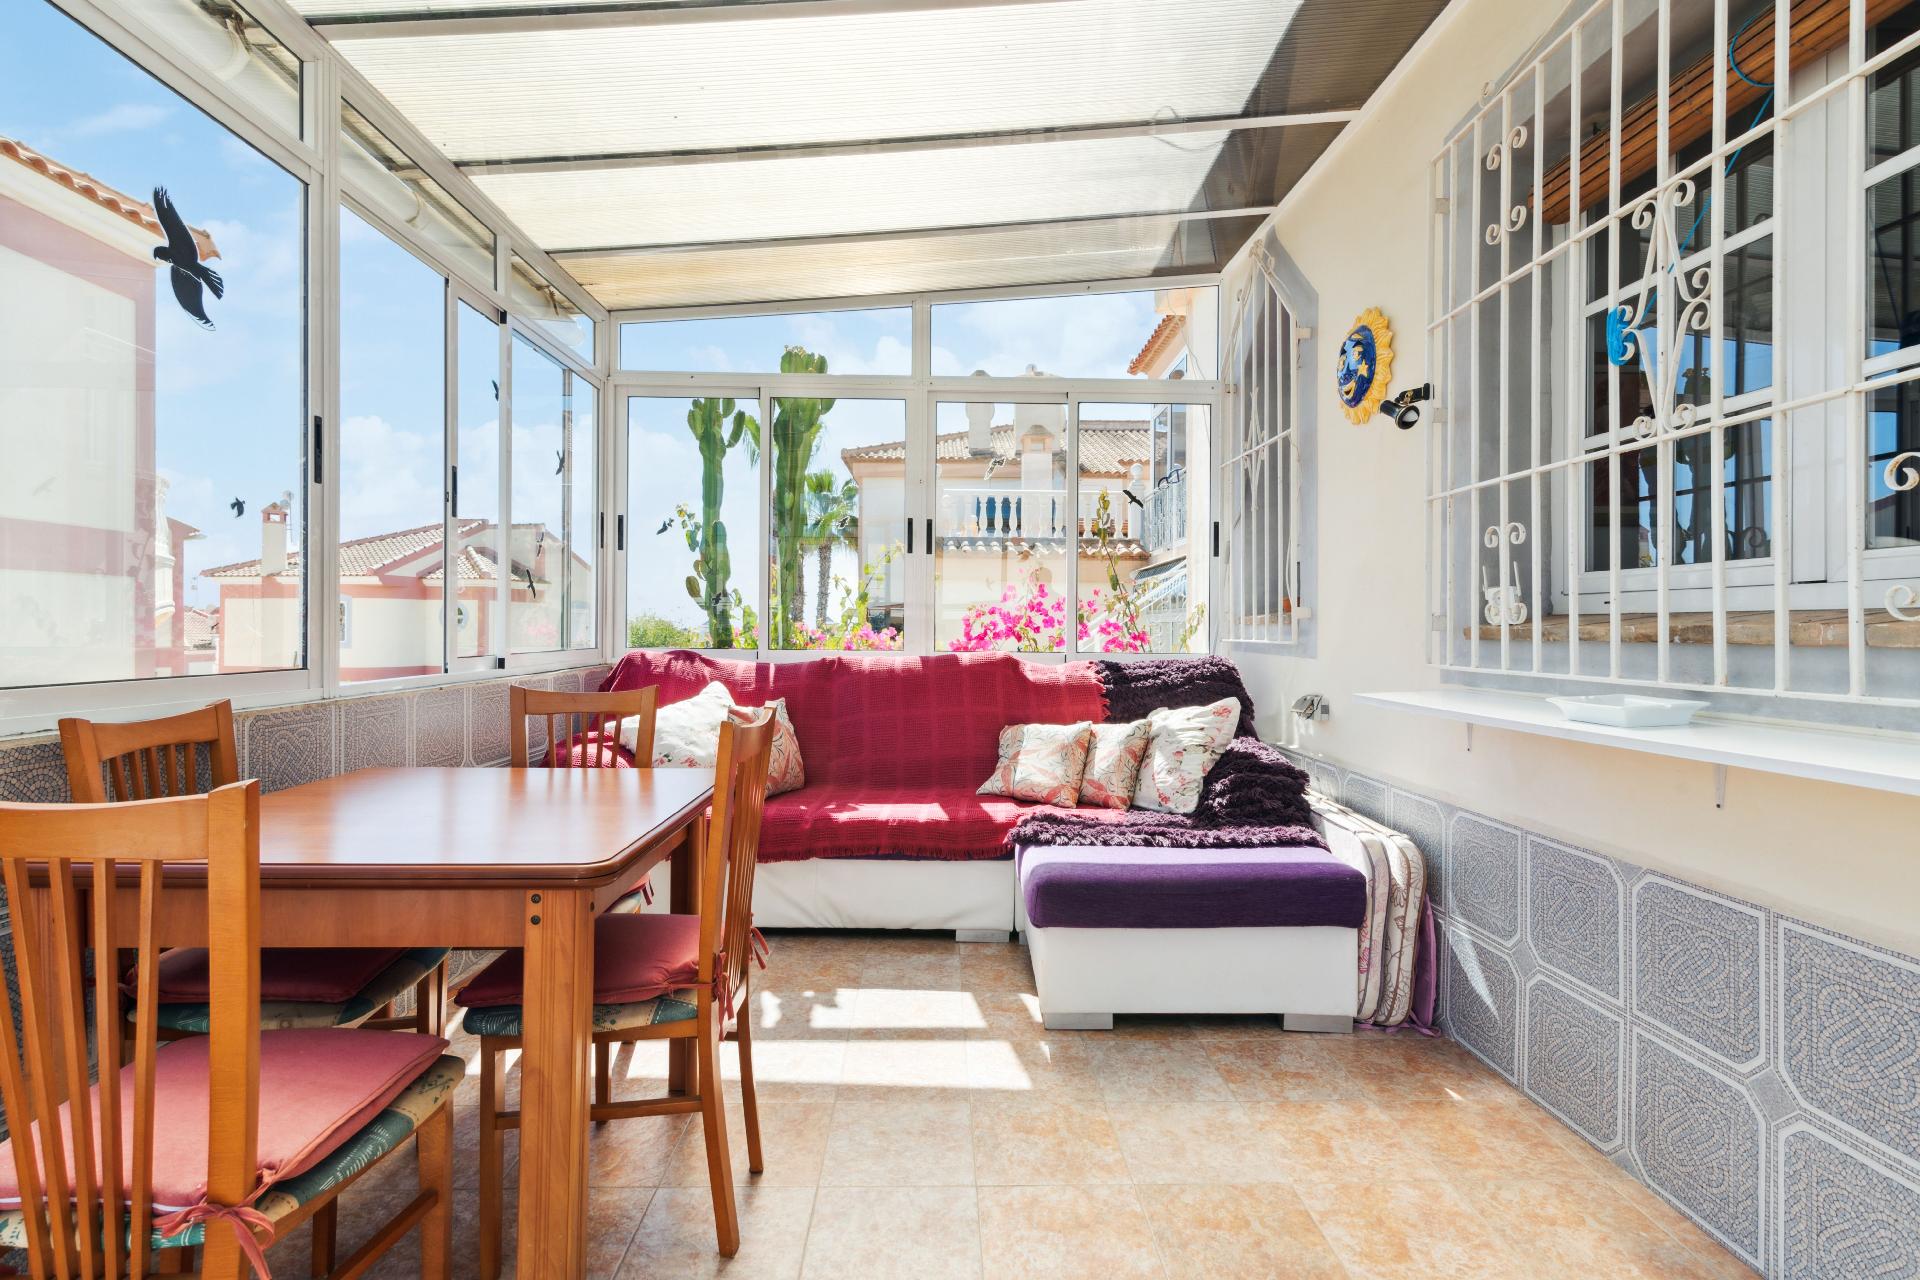 Ferienhaus für 4 Personen ca. 60 m² in P Ferienhaus in Spanien